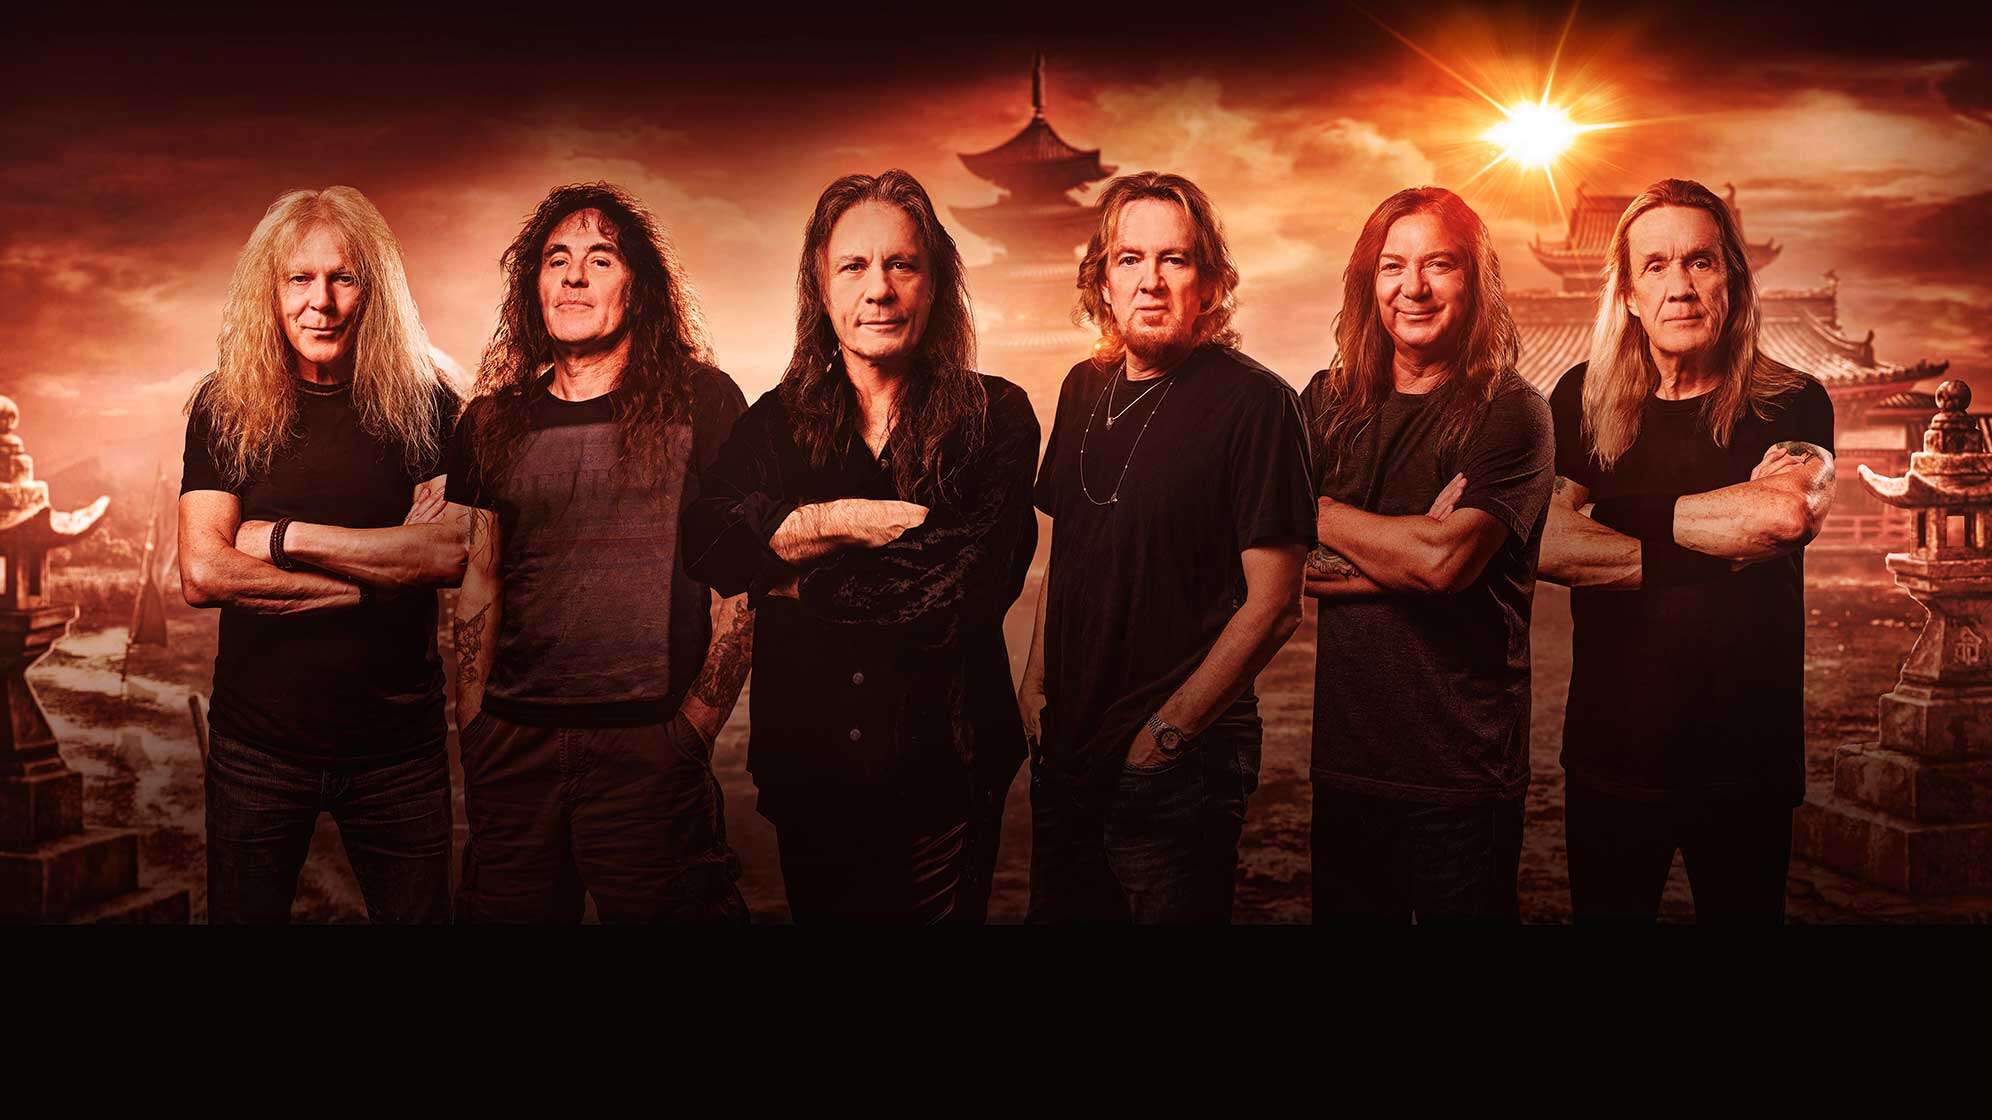 Das Pressefoto der Heavy Metal-Band Iron Maiden. Von links nach rechts stehen: Janick Gers, Steve Harris, Bruce Dickinson, Adrian Smith, Dave Murray und Nicko McBrain.